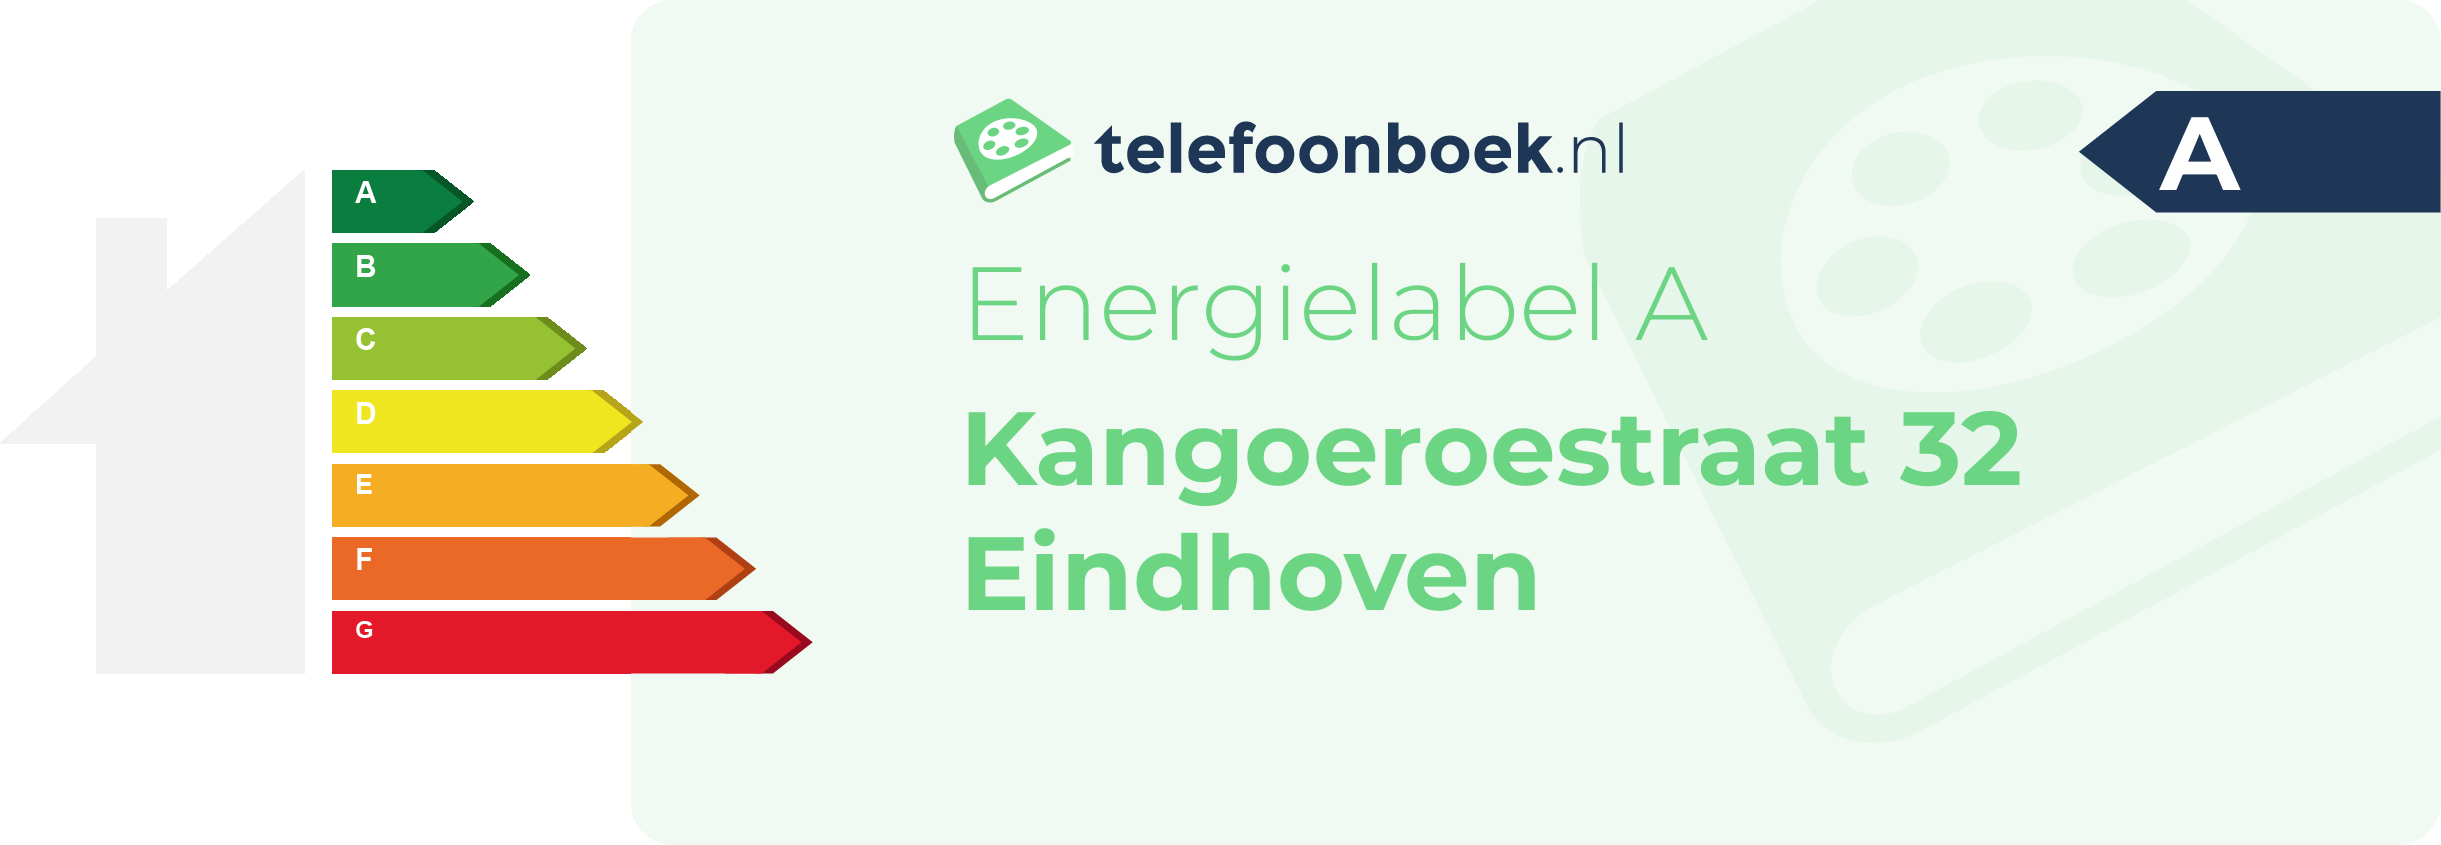 Energielabel Kangoeroestraat 32 Eindhoven